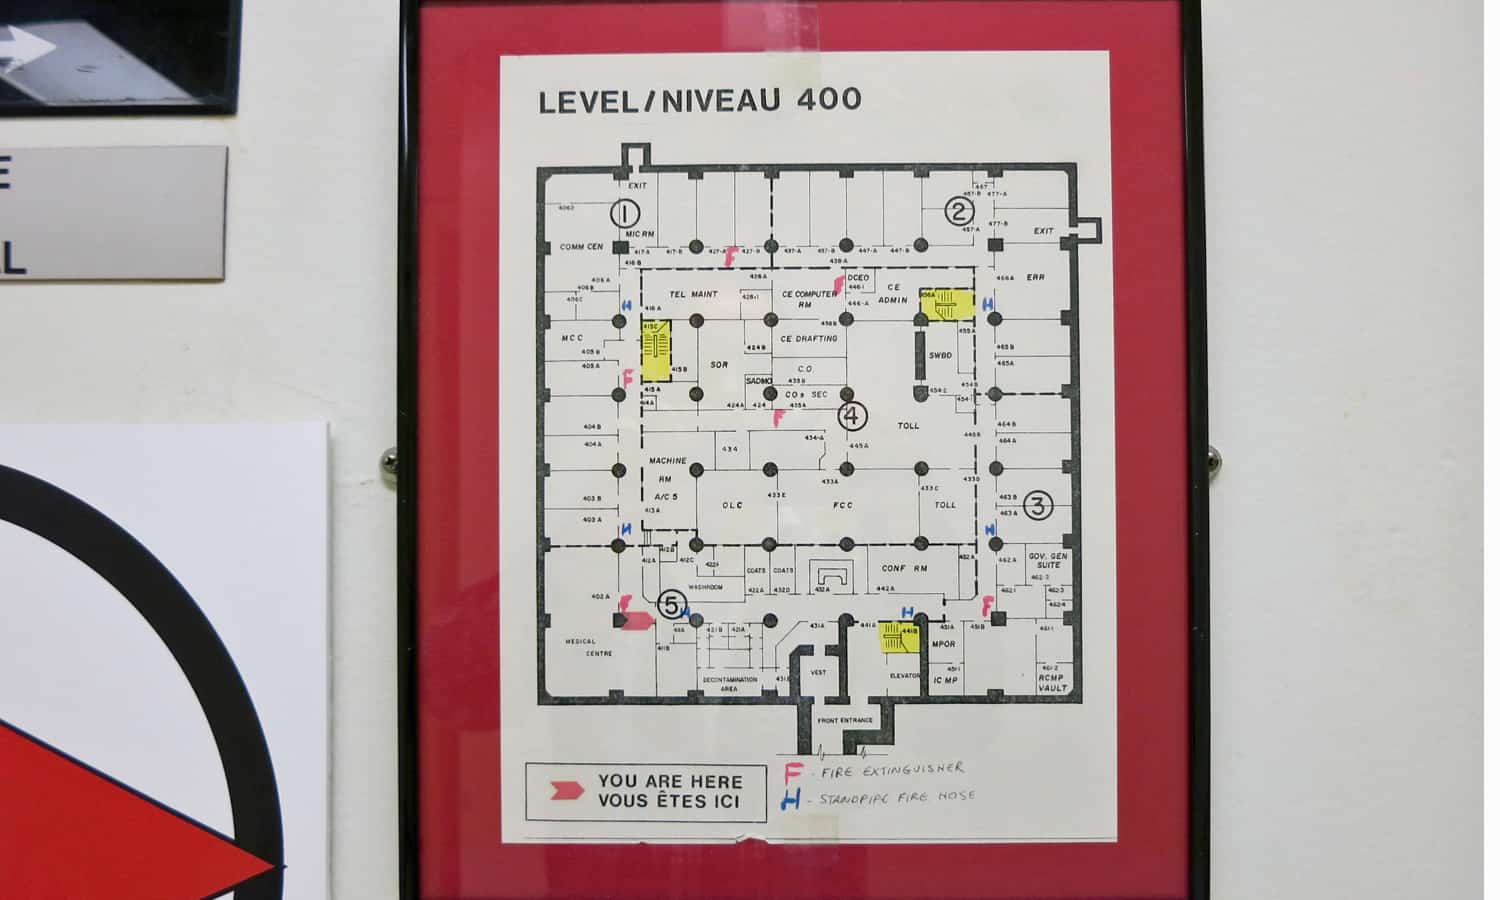 Floor plan of level 400